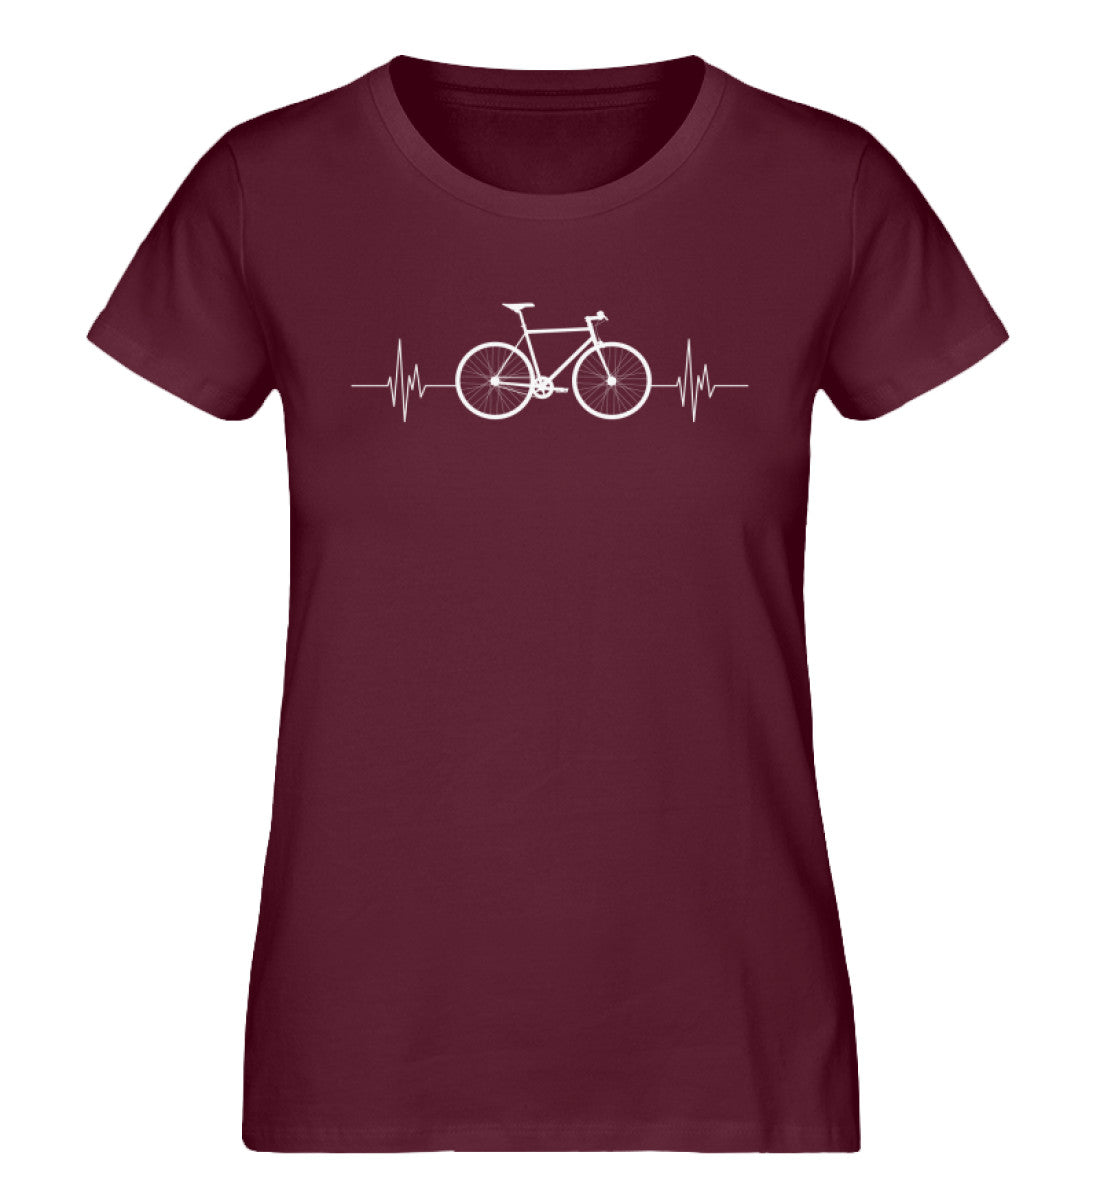 Fahrrad Herzschlag - Damen Organic T-Shirt fahrrad mountainbike Weinrot